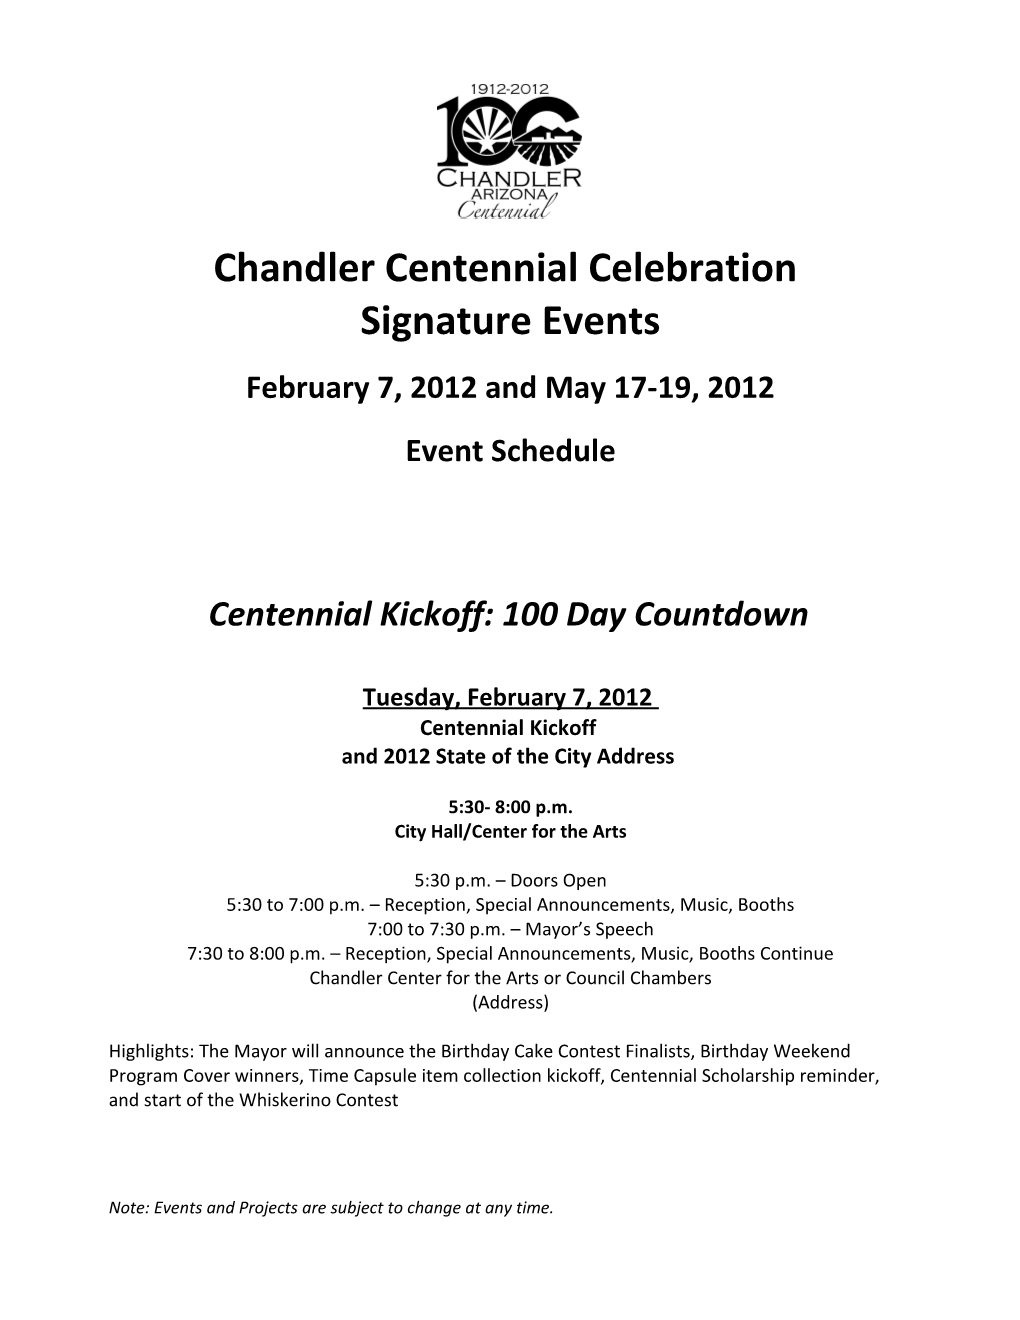 Chandler Centennial Celebration